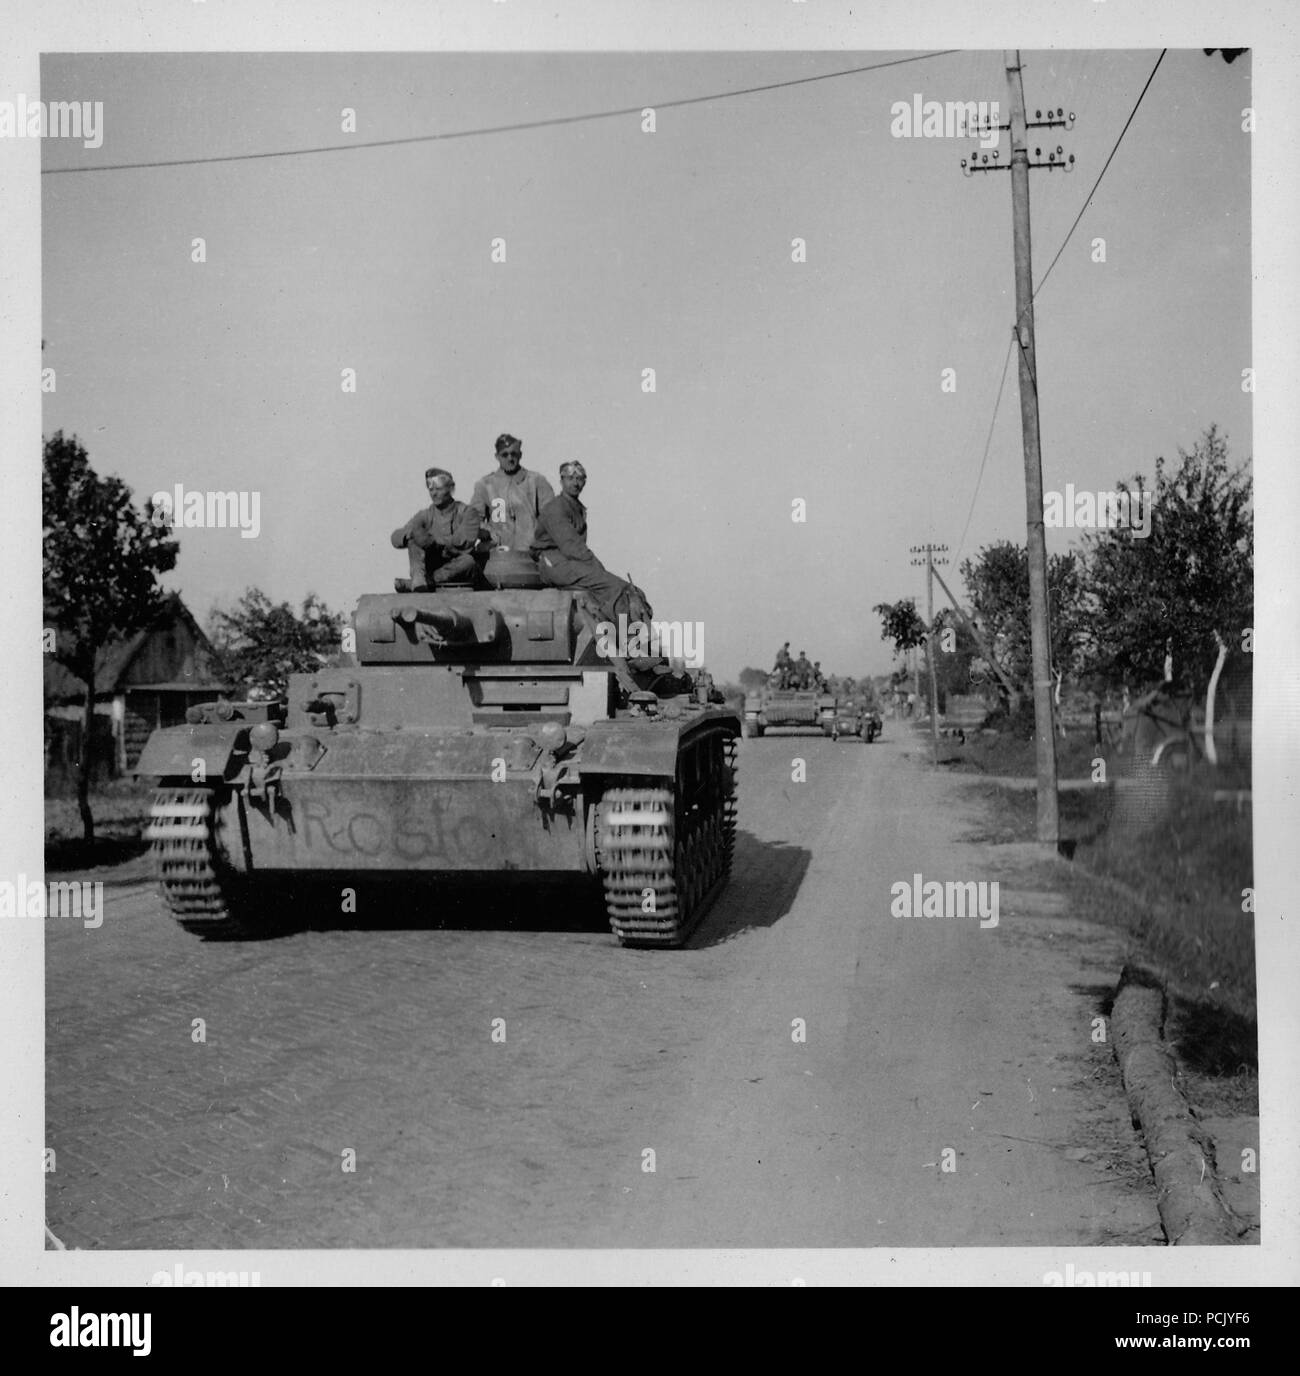 Image à partir d'un album de photos relatives à II. Gruppe, Jagdgeschwader 3 : Panzer III de la 13e Division blindée, rouler sur une route russe dirigée par un réservoir marqué 'Rostock' dans l'été de 1941 Banque D'Images